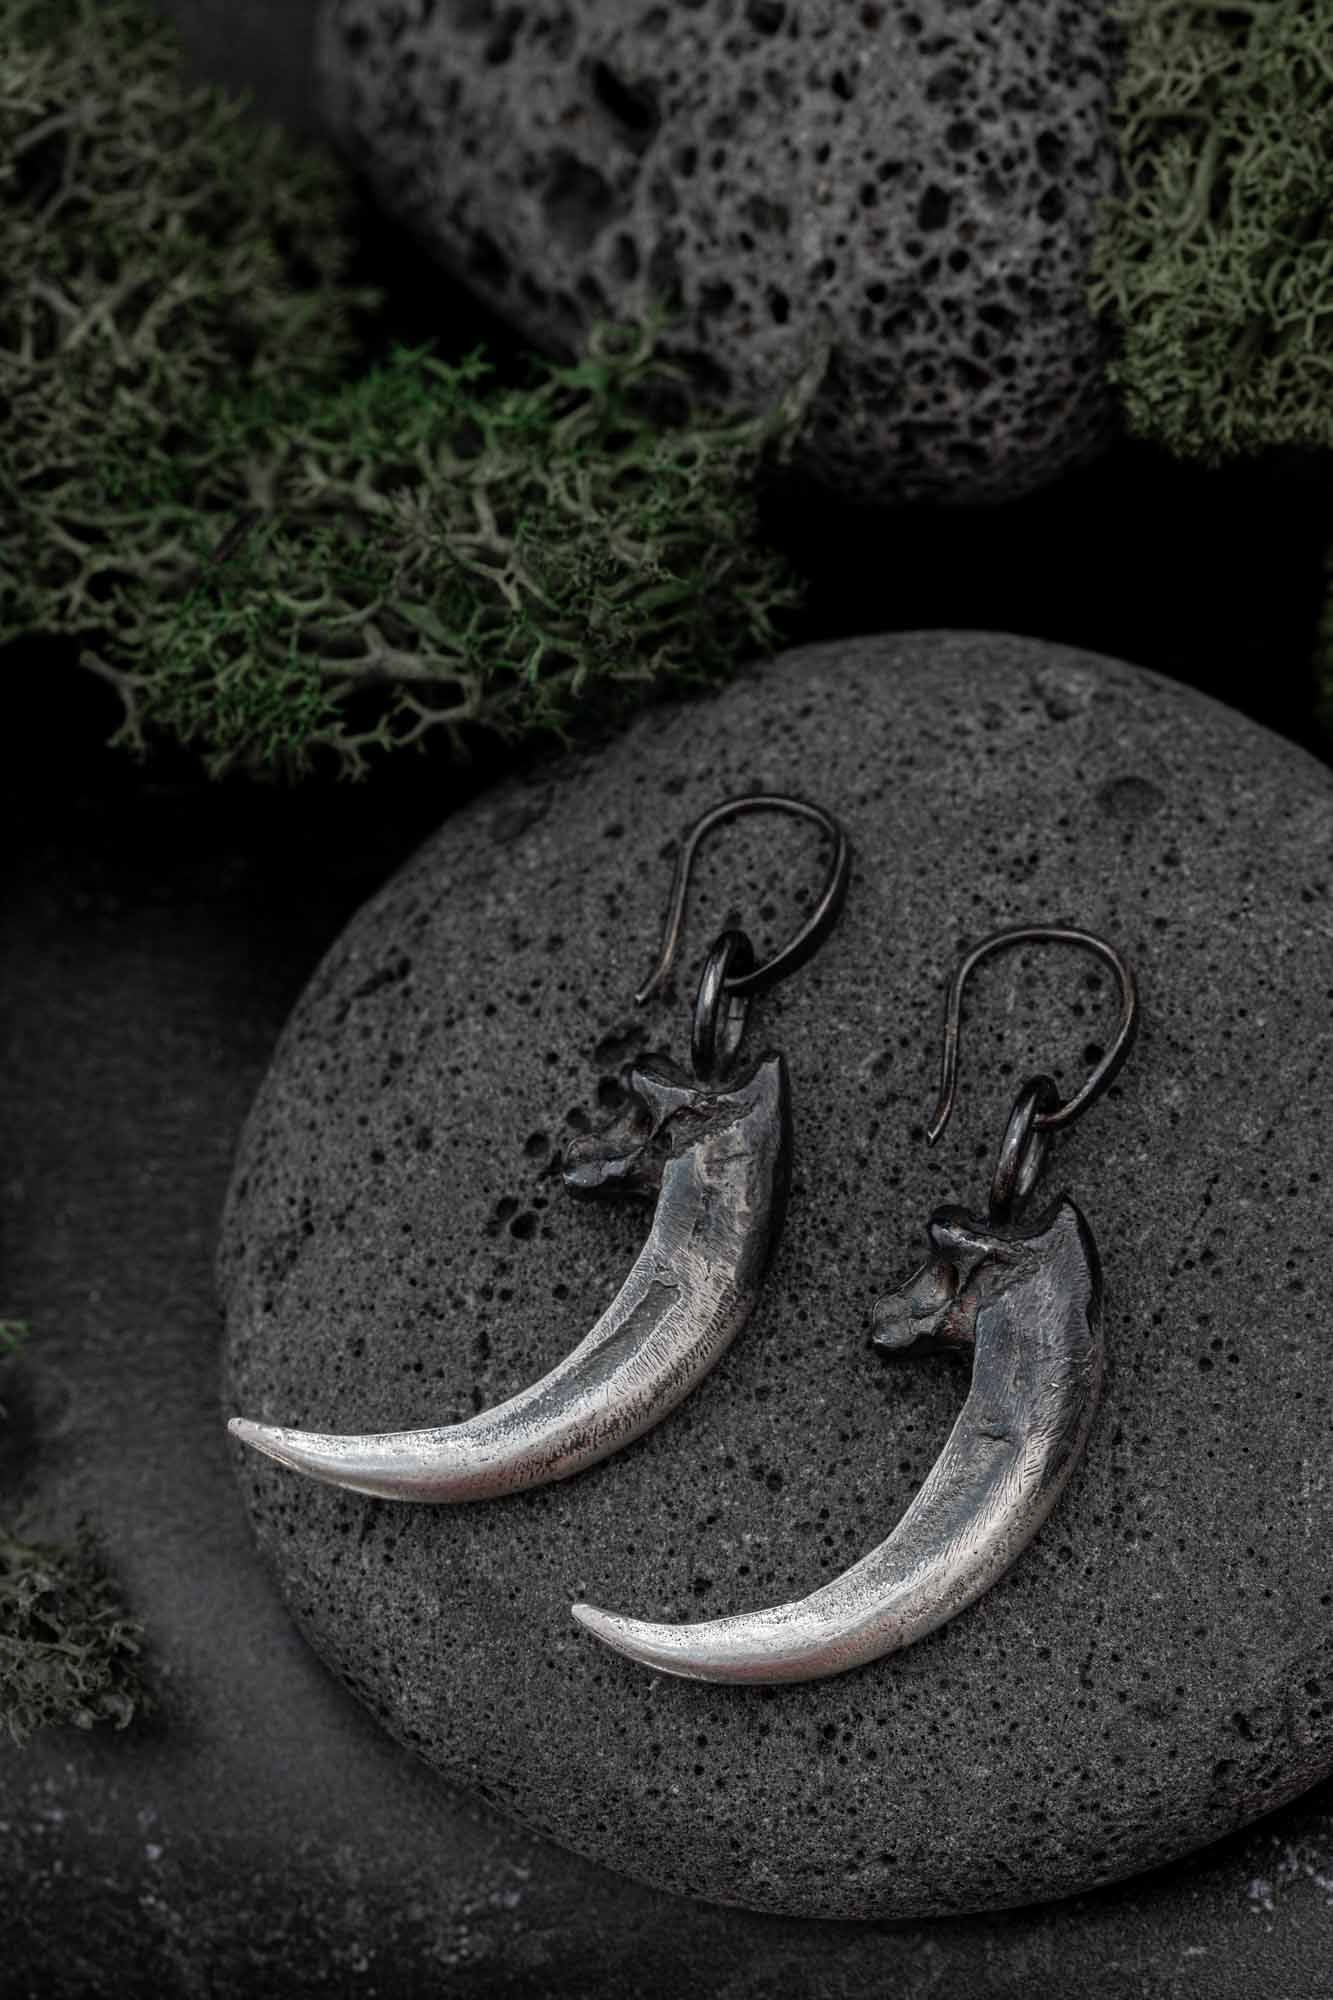 Raven talon earrings, silver raven claw earrings, raven jewellery for vikings